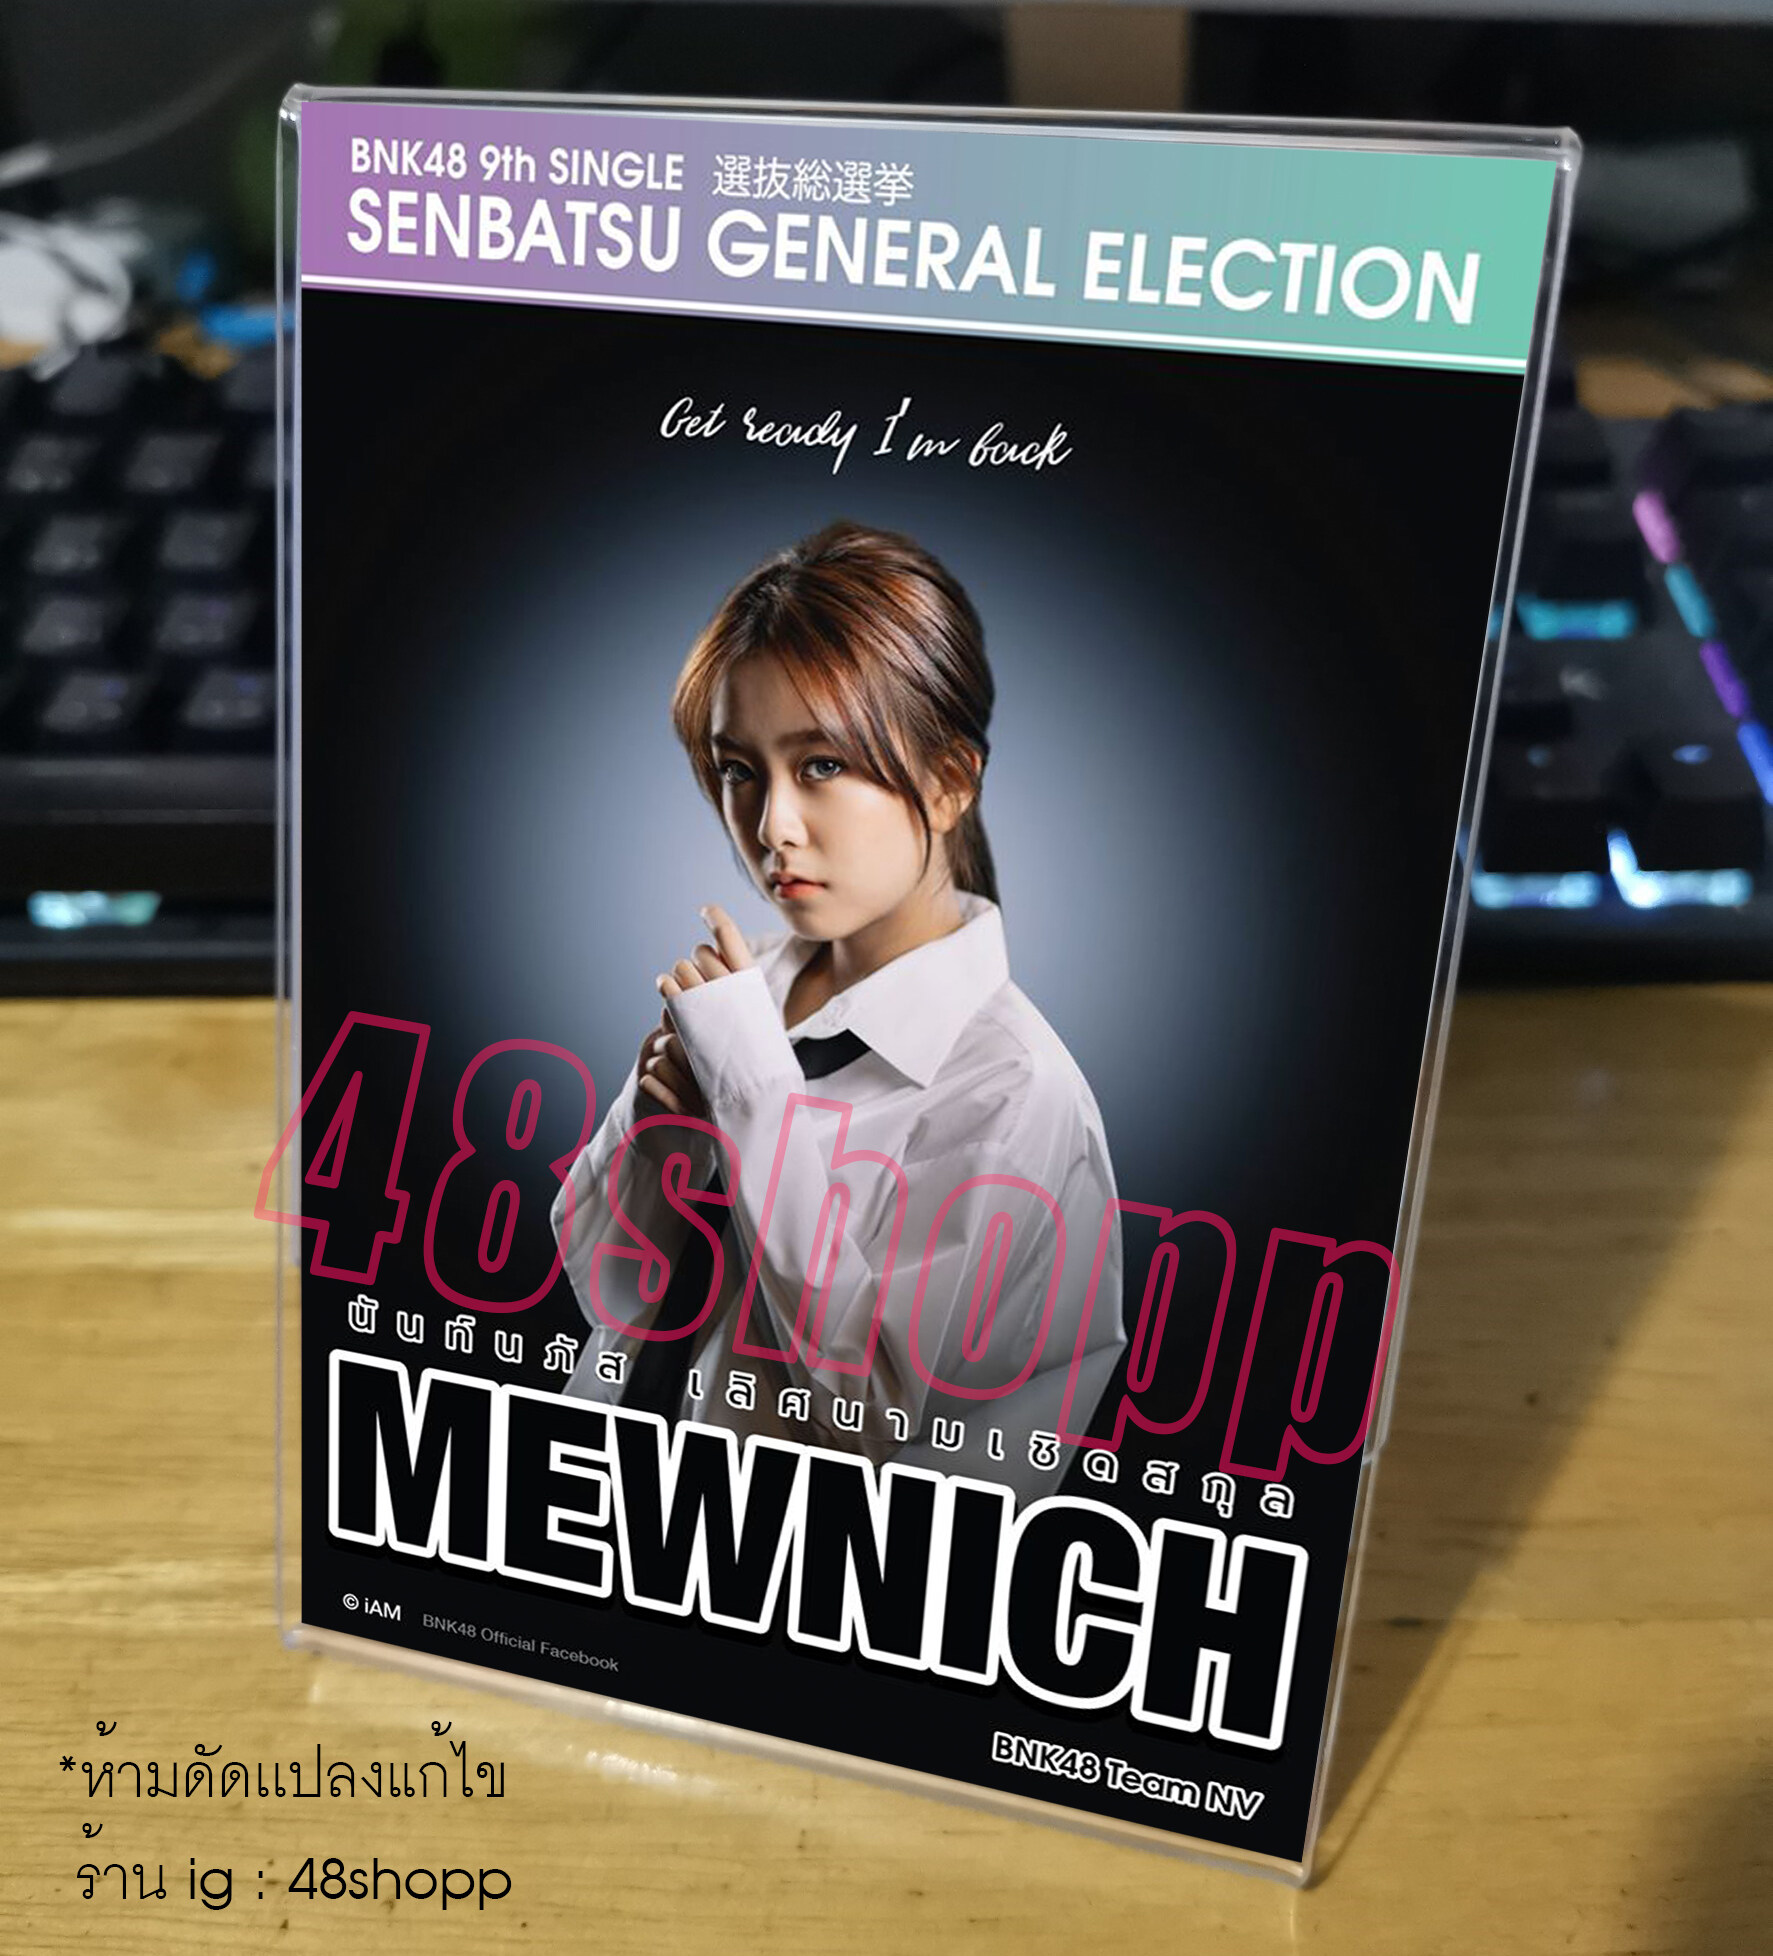 บัตรเลือกตั้ง BNK48 9th Single Senbatsu General Election รุ่น 2